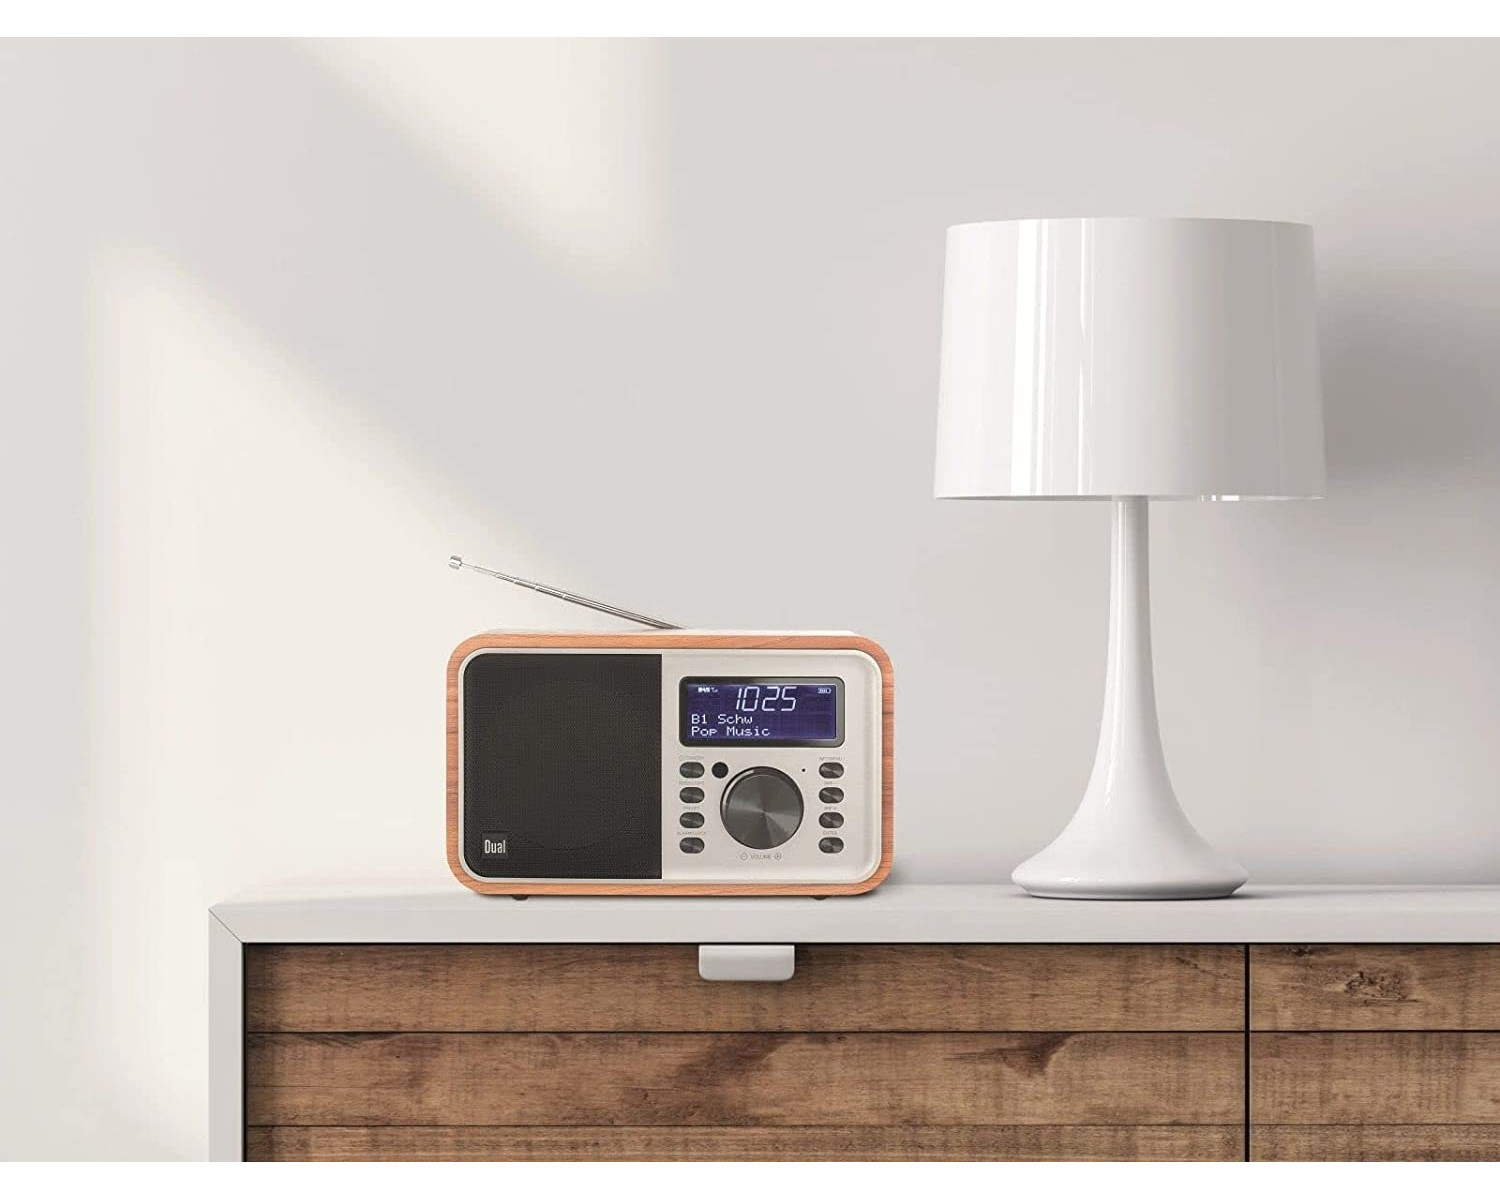 DUAL DCR51 Radio, DAB+, DAB+, Bluetooth, Holz